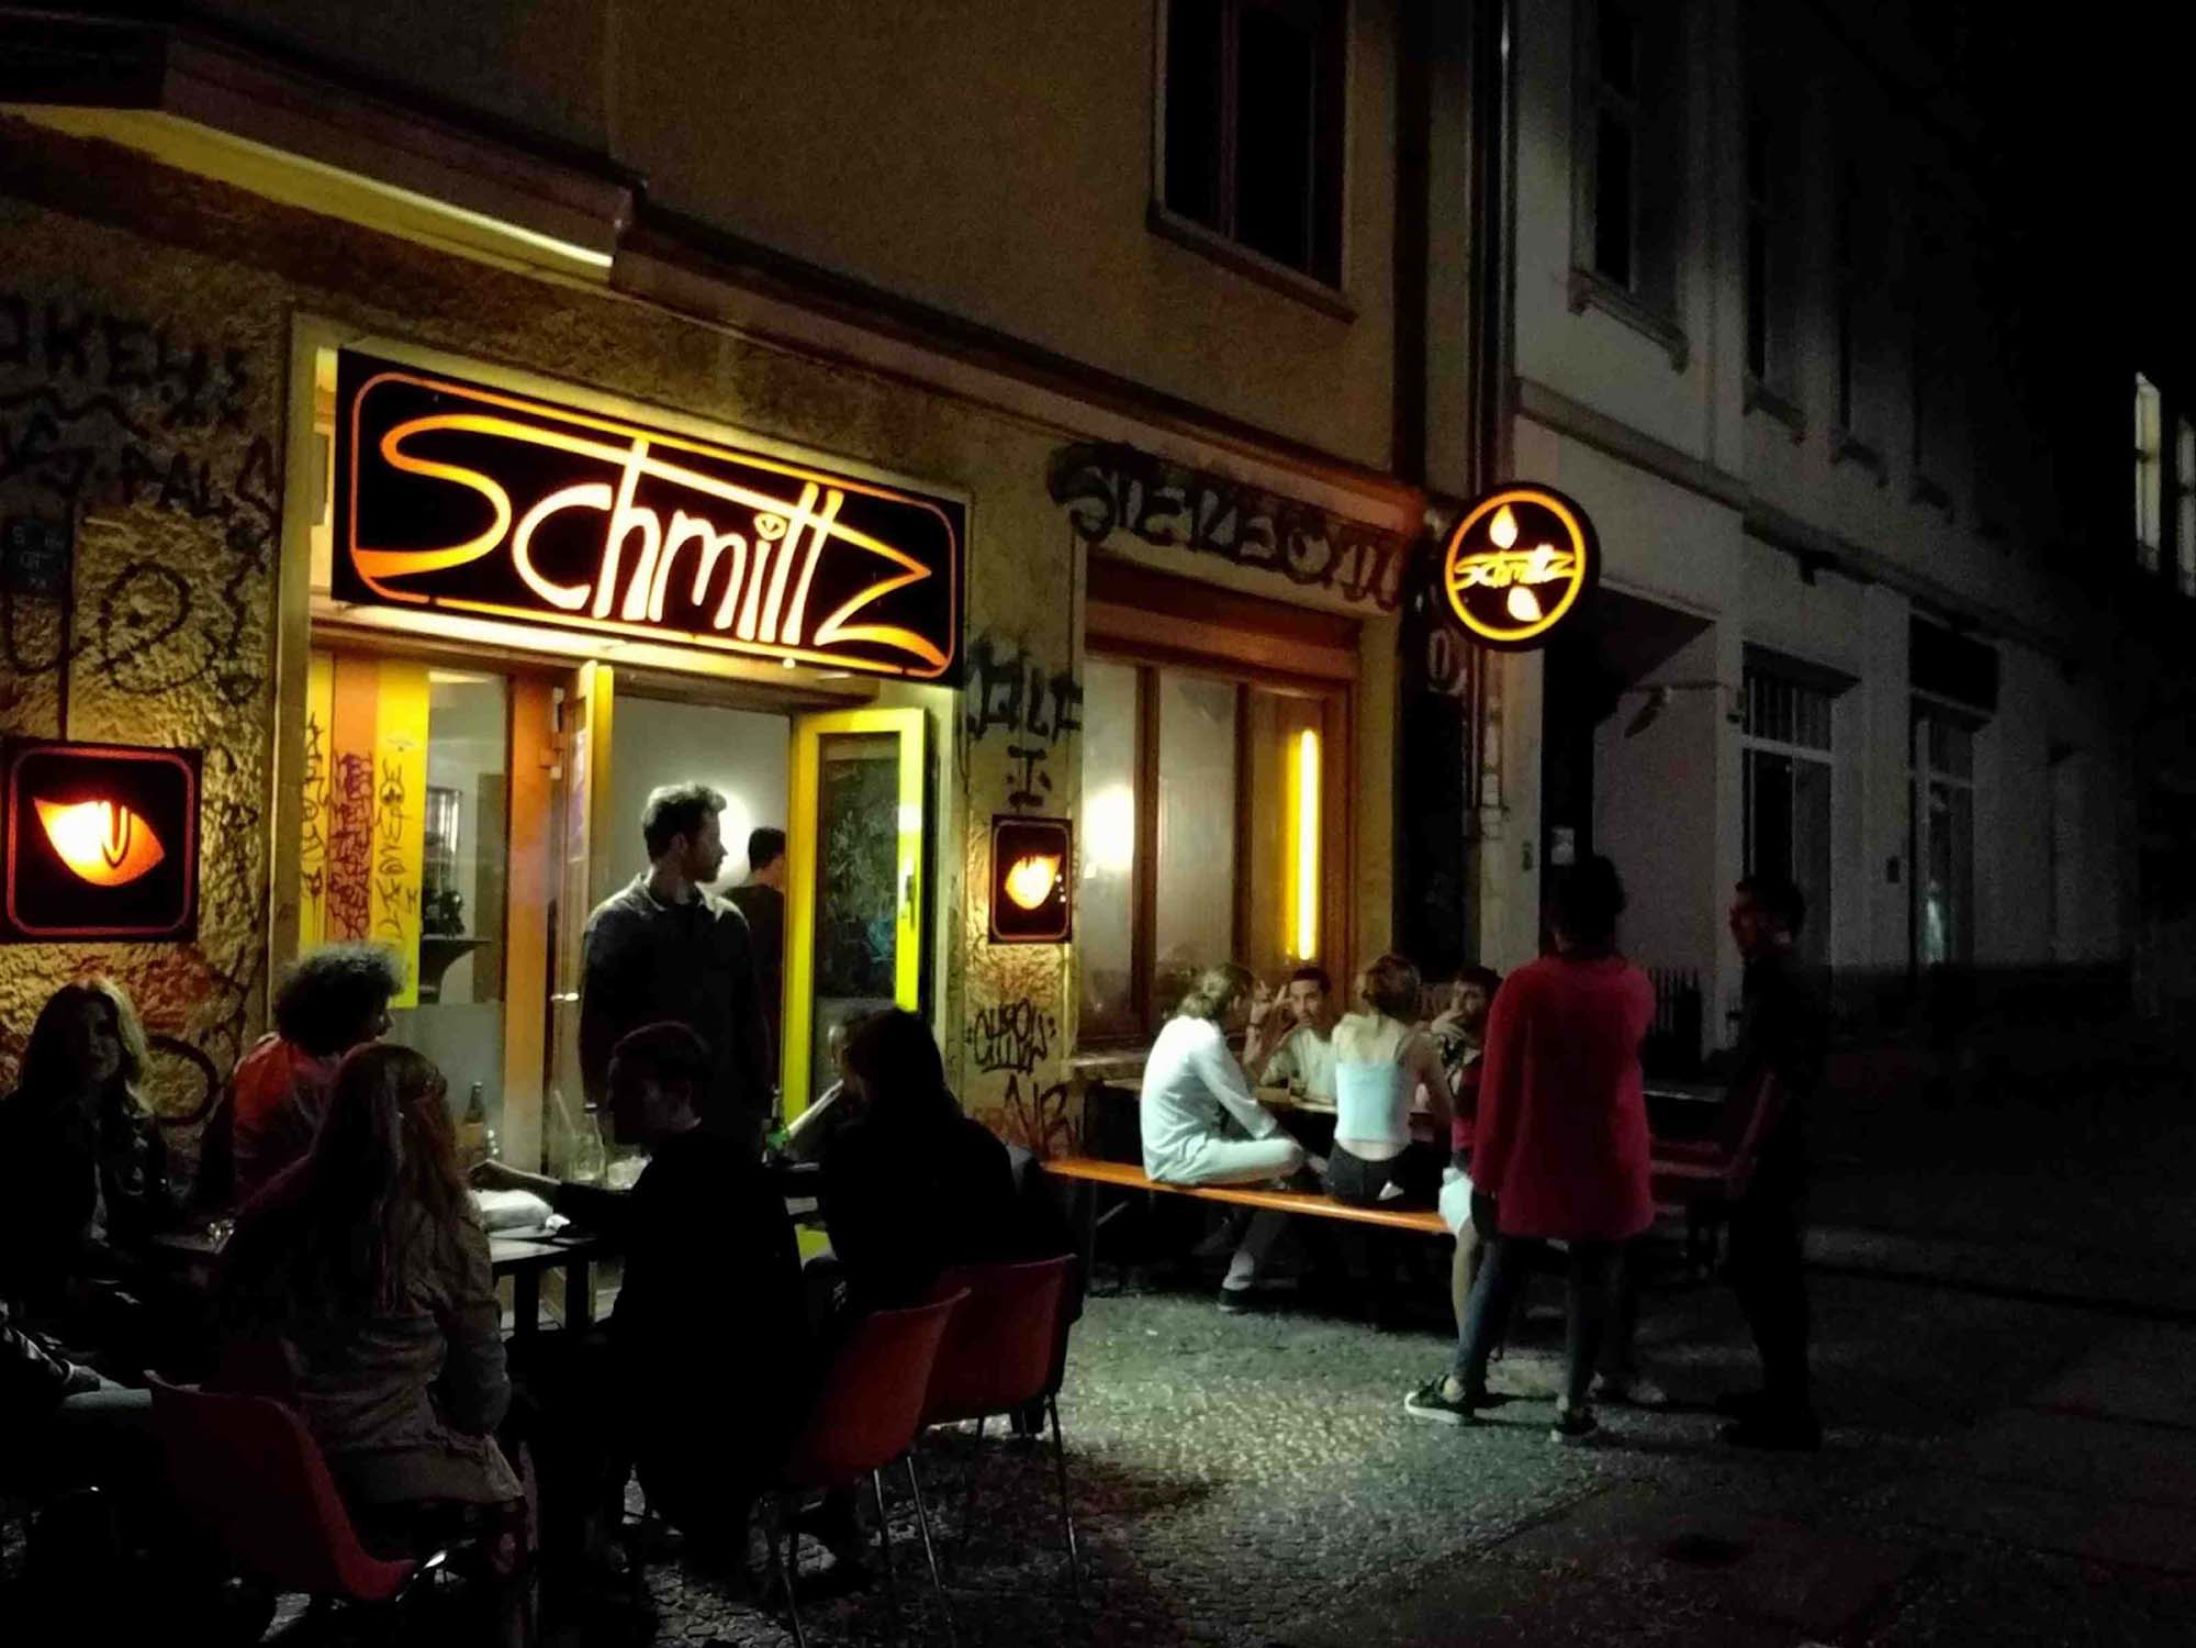 Schmittz - Best Pubs in Berlin